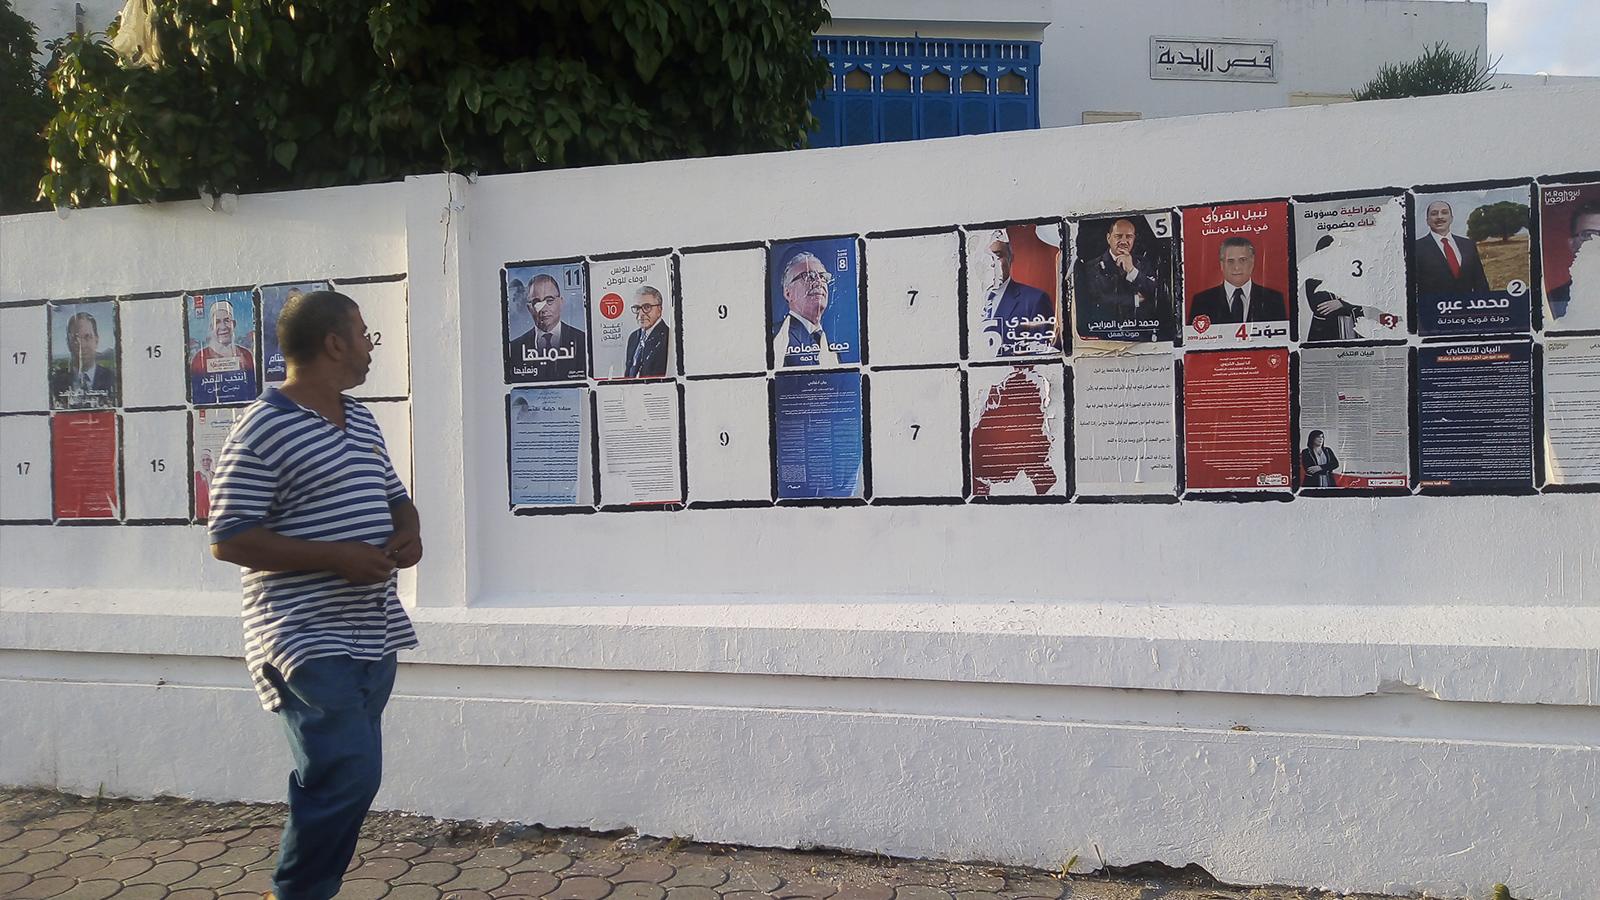 ‪يشارك في الانتخابات المقرر إجراؤه يوم 15 سبتمبر/أيلول الجاري خمسة مرشحين دون سن الخمسين من بينهم امرأتان‬ (الجزيرة)